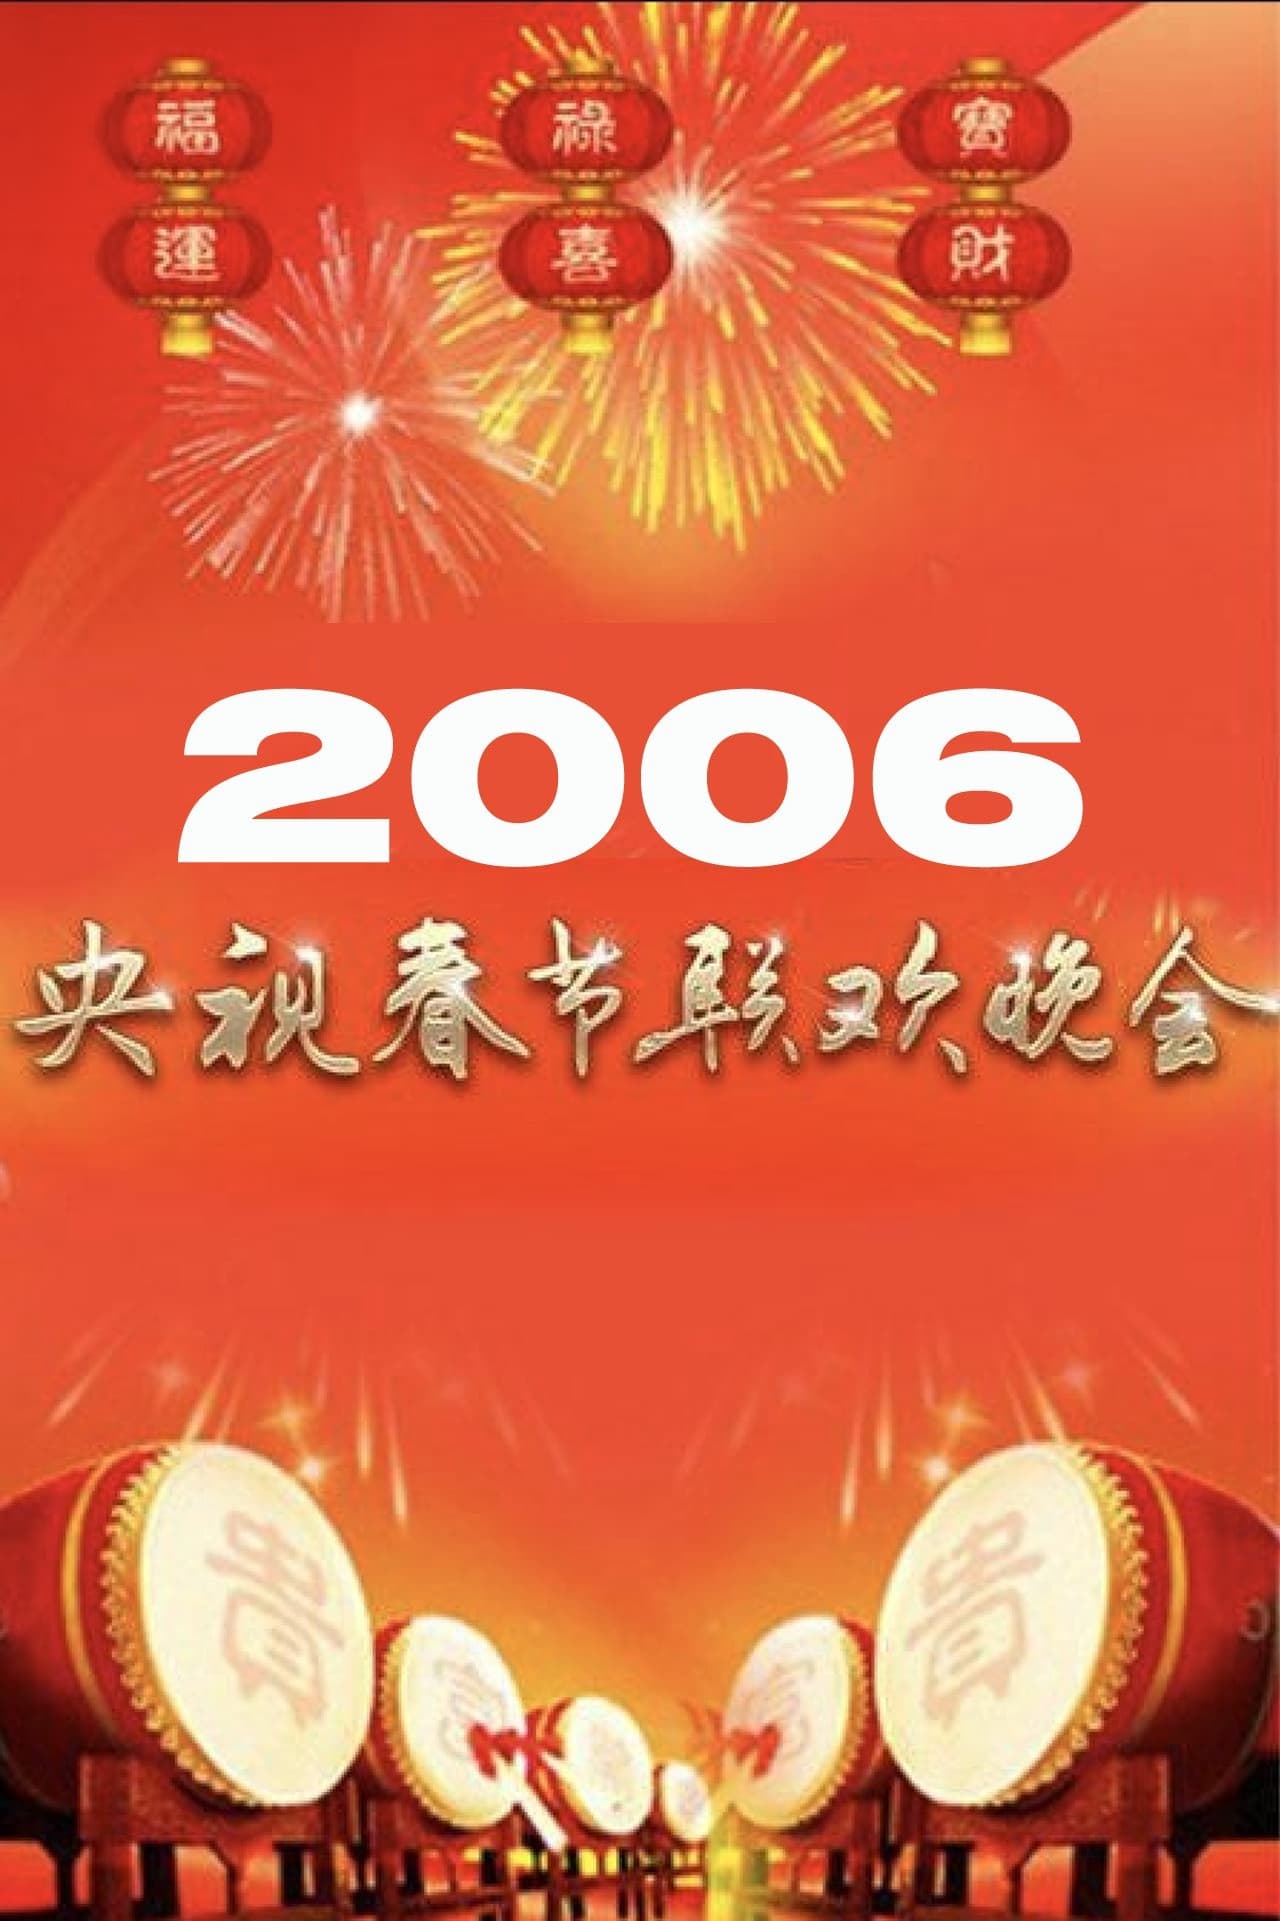 2006年中央广播电视总台春节联欢晚会